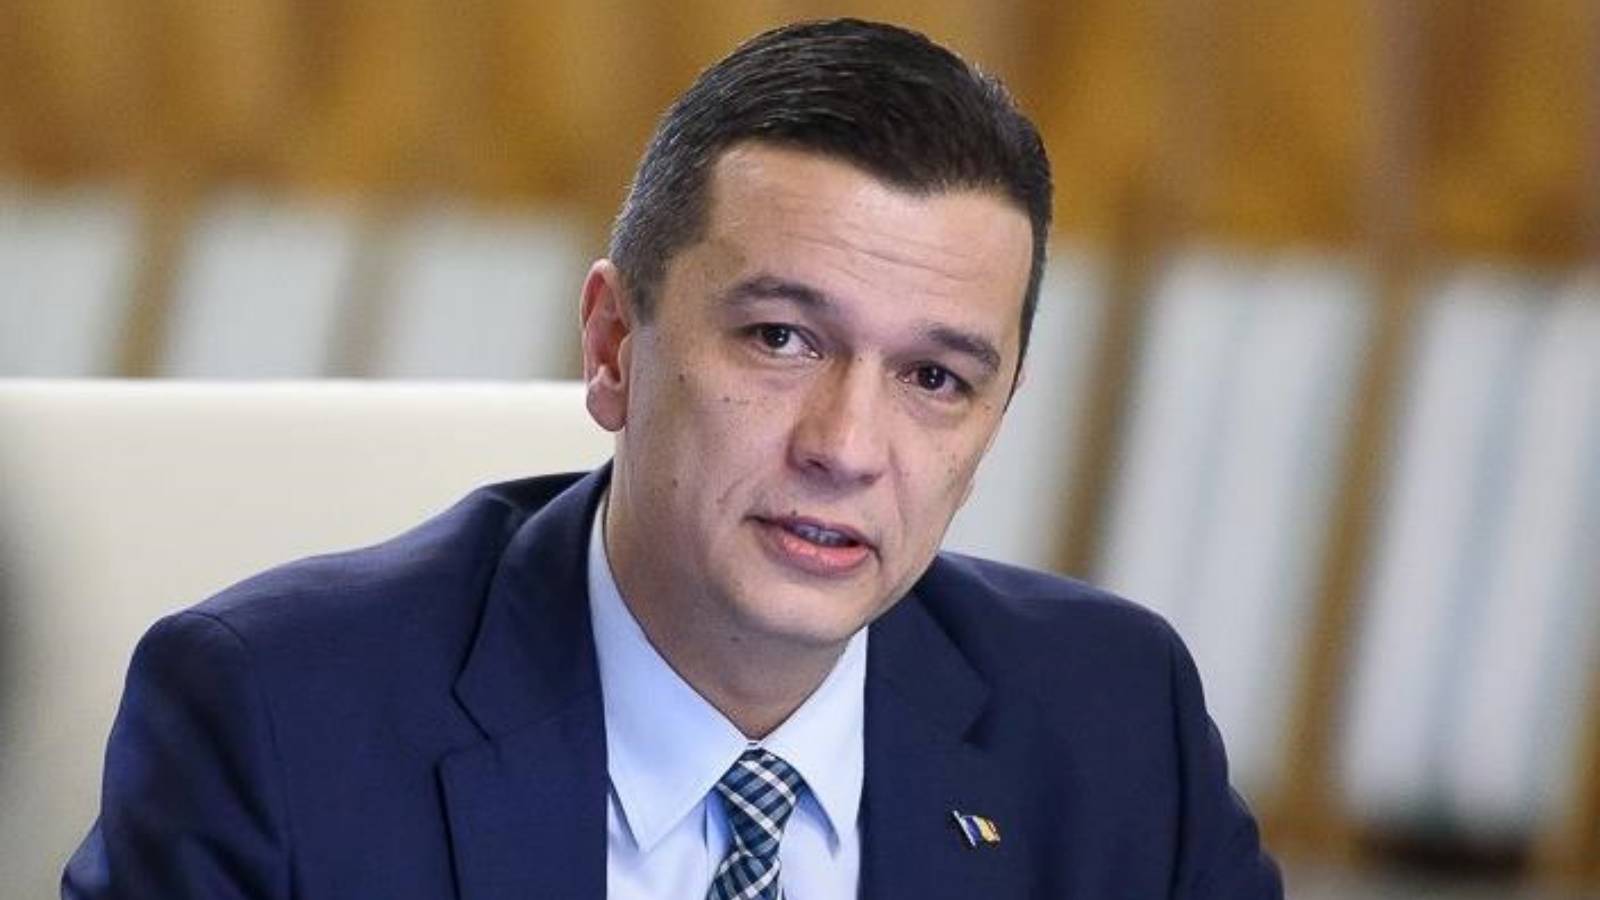 Sorin Grindeanu Masuri Oficiale ULTIM MOMENT Romania Investitiile Infrastructura